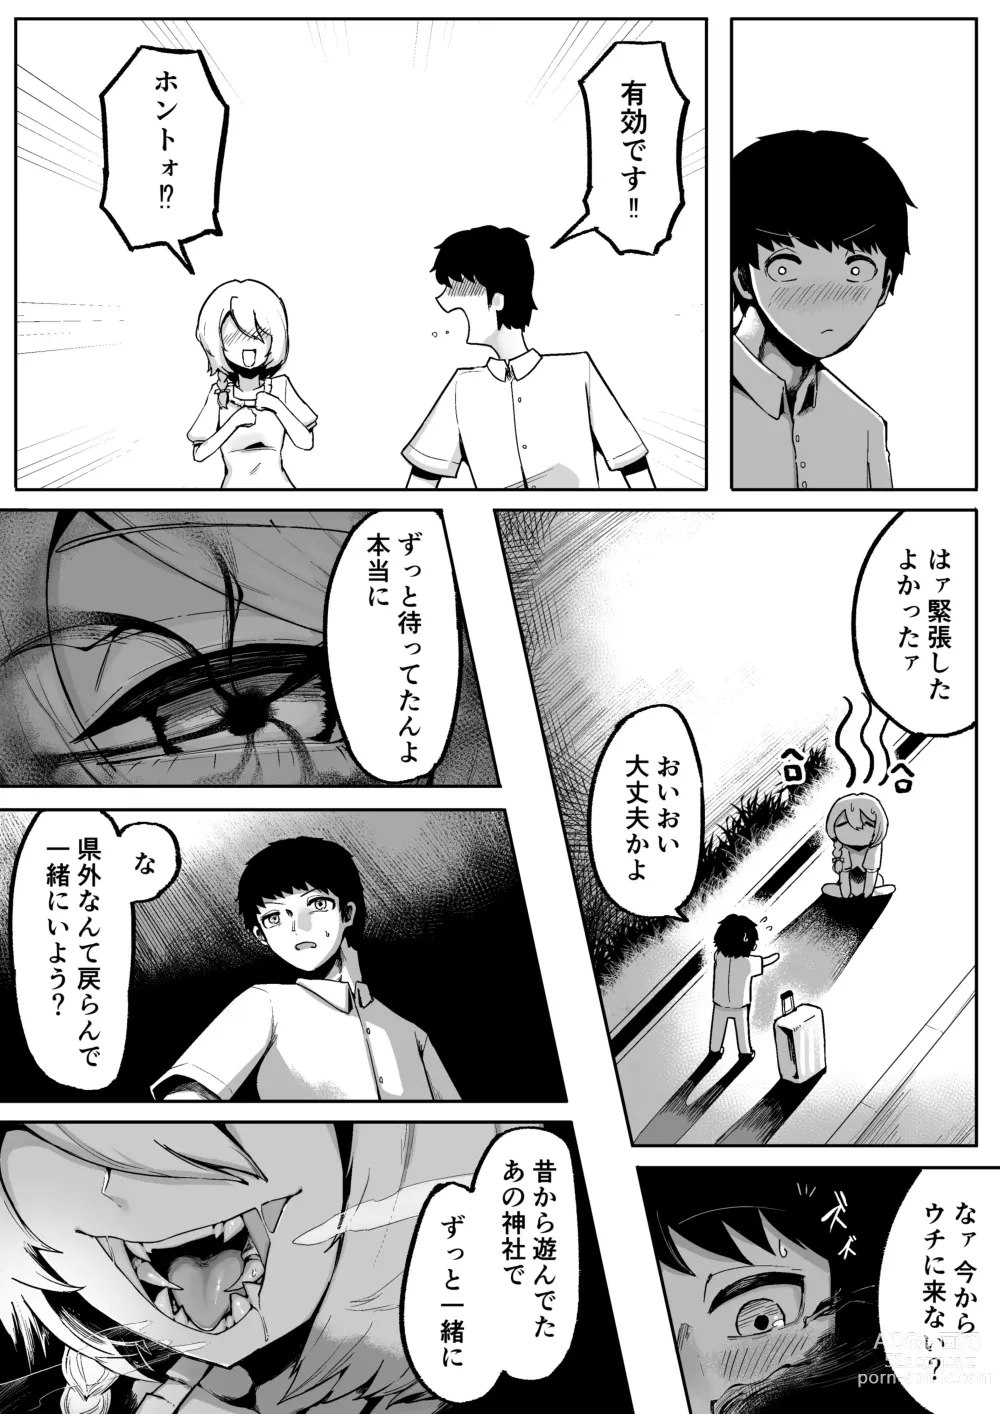 Page 17 of doujinshi Kamisama to Kodomo ga Dekiru made